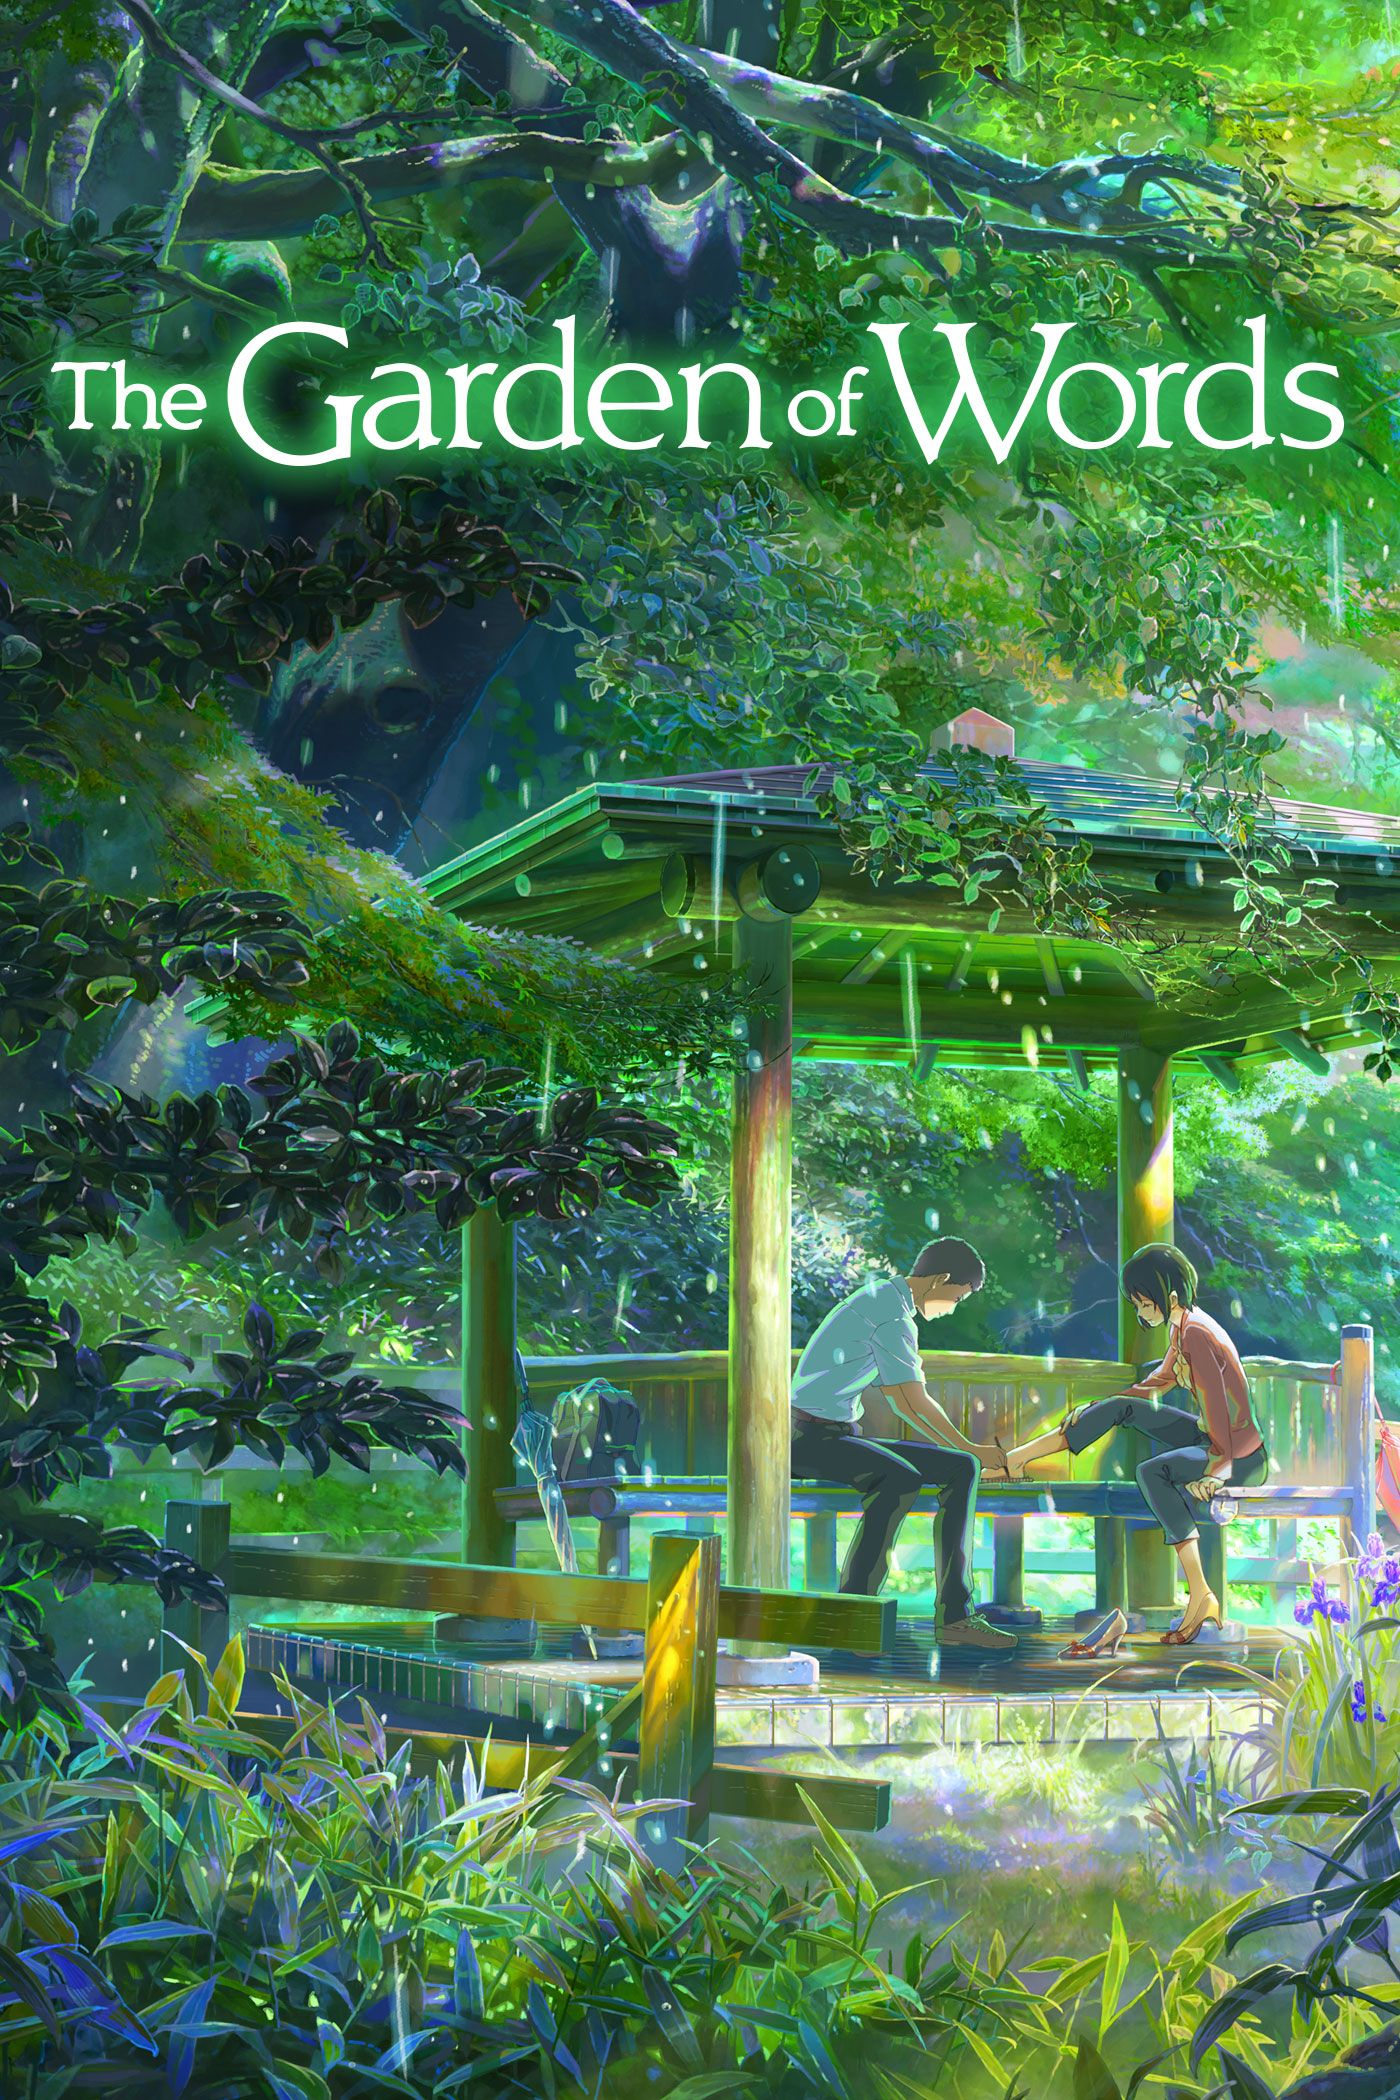 ดูหนังออนไลน์HD The Garden of Words (2013) ยามสายฝนโปรยปราย หนังเต็มเรื่อง หนังมาสเตอร์ ดูหนังHD ดูหนังออนไลน์ ดูหนังใหม่